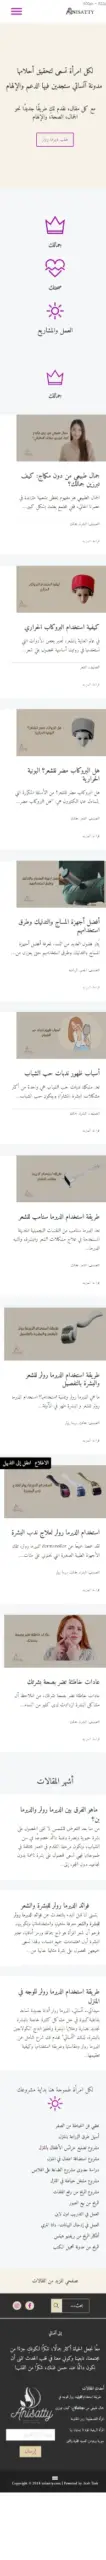 موقع للجمال والمرأة من تصمم عرب تاسك نسخة الجوال